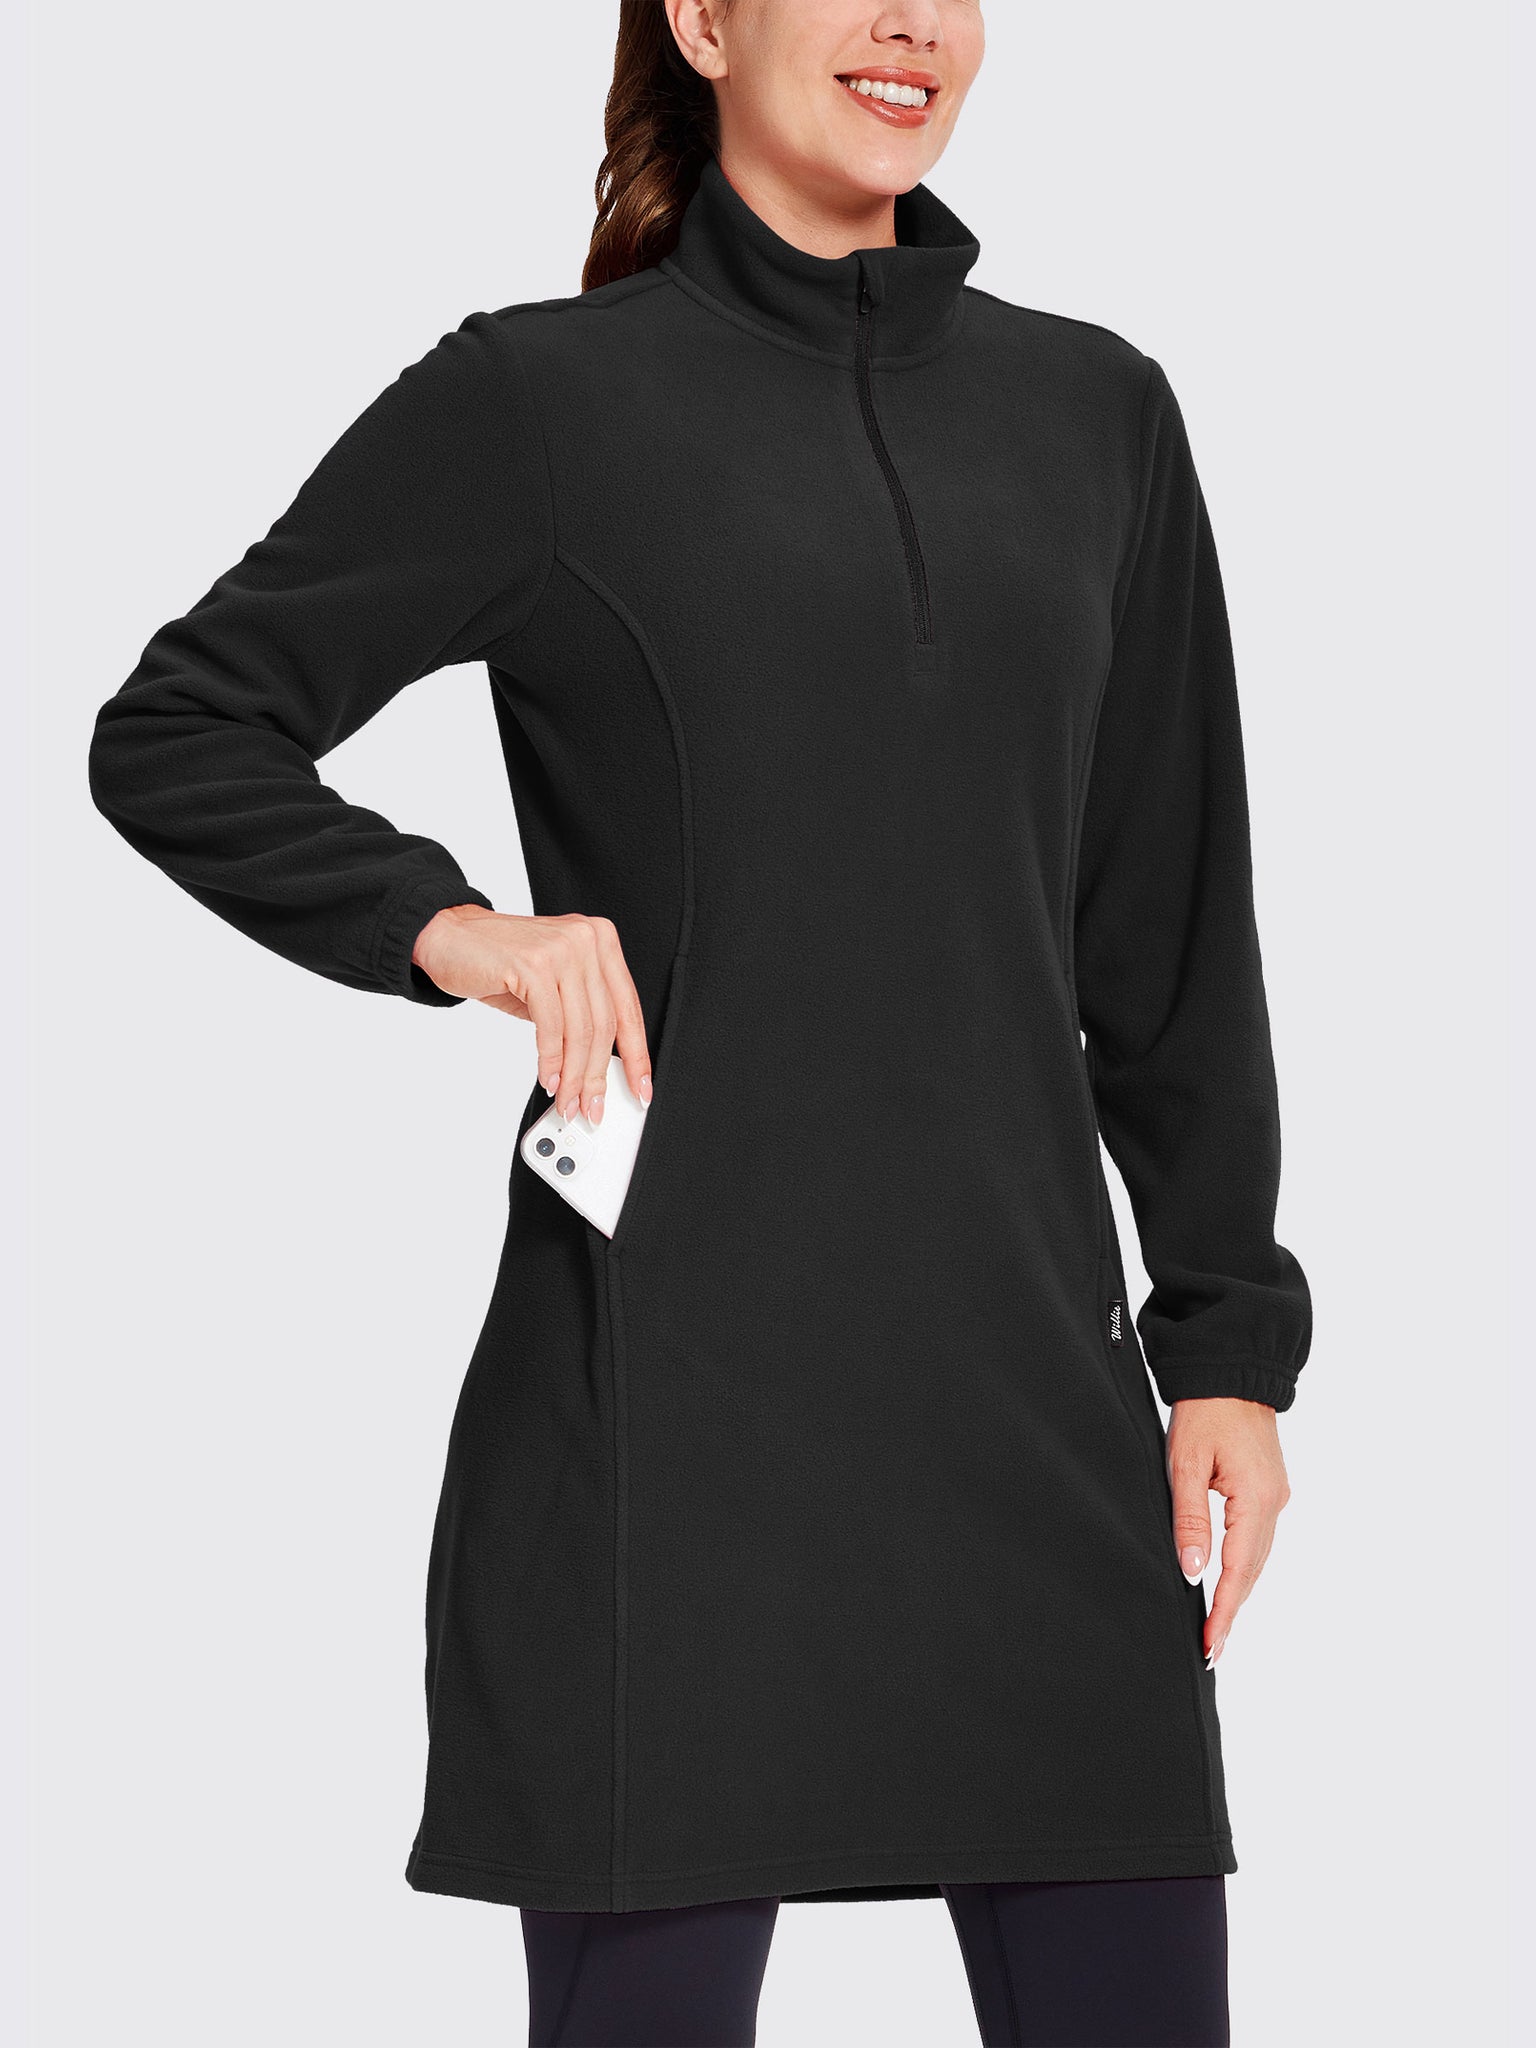 Women's Fleece Long-Sleeve Turtleneck Dress Black2